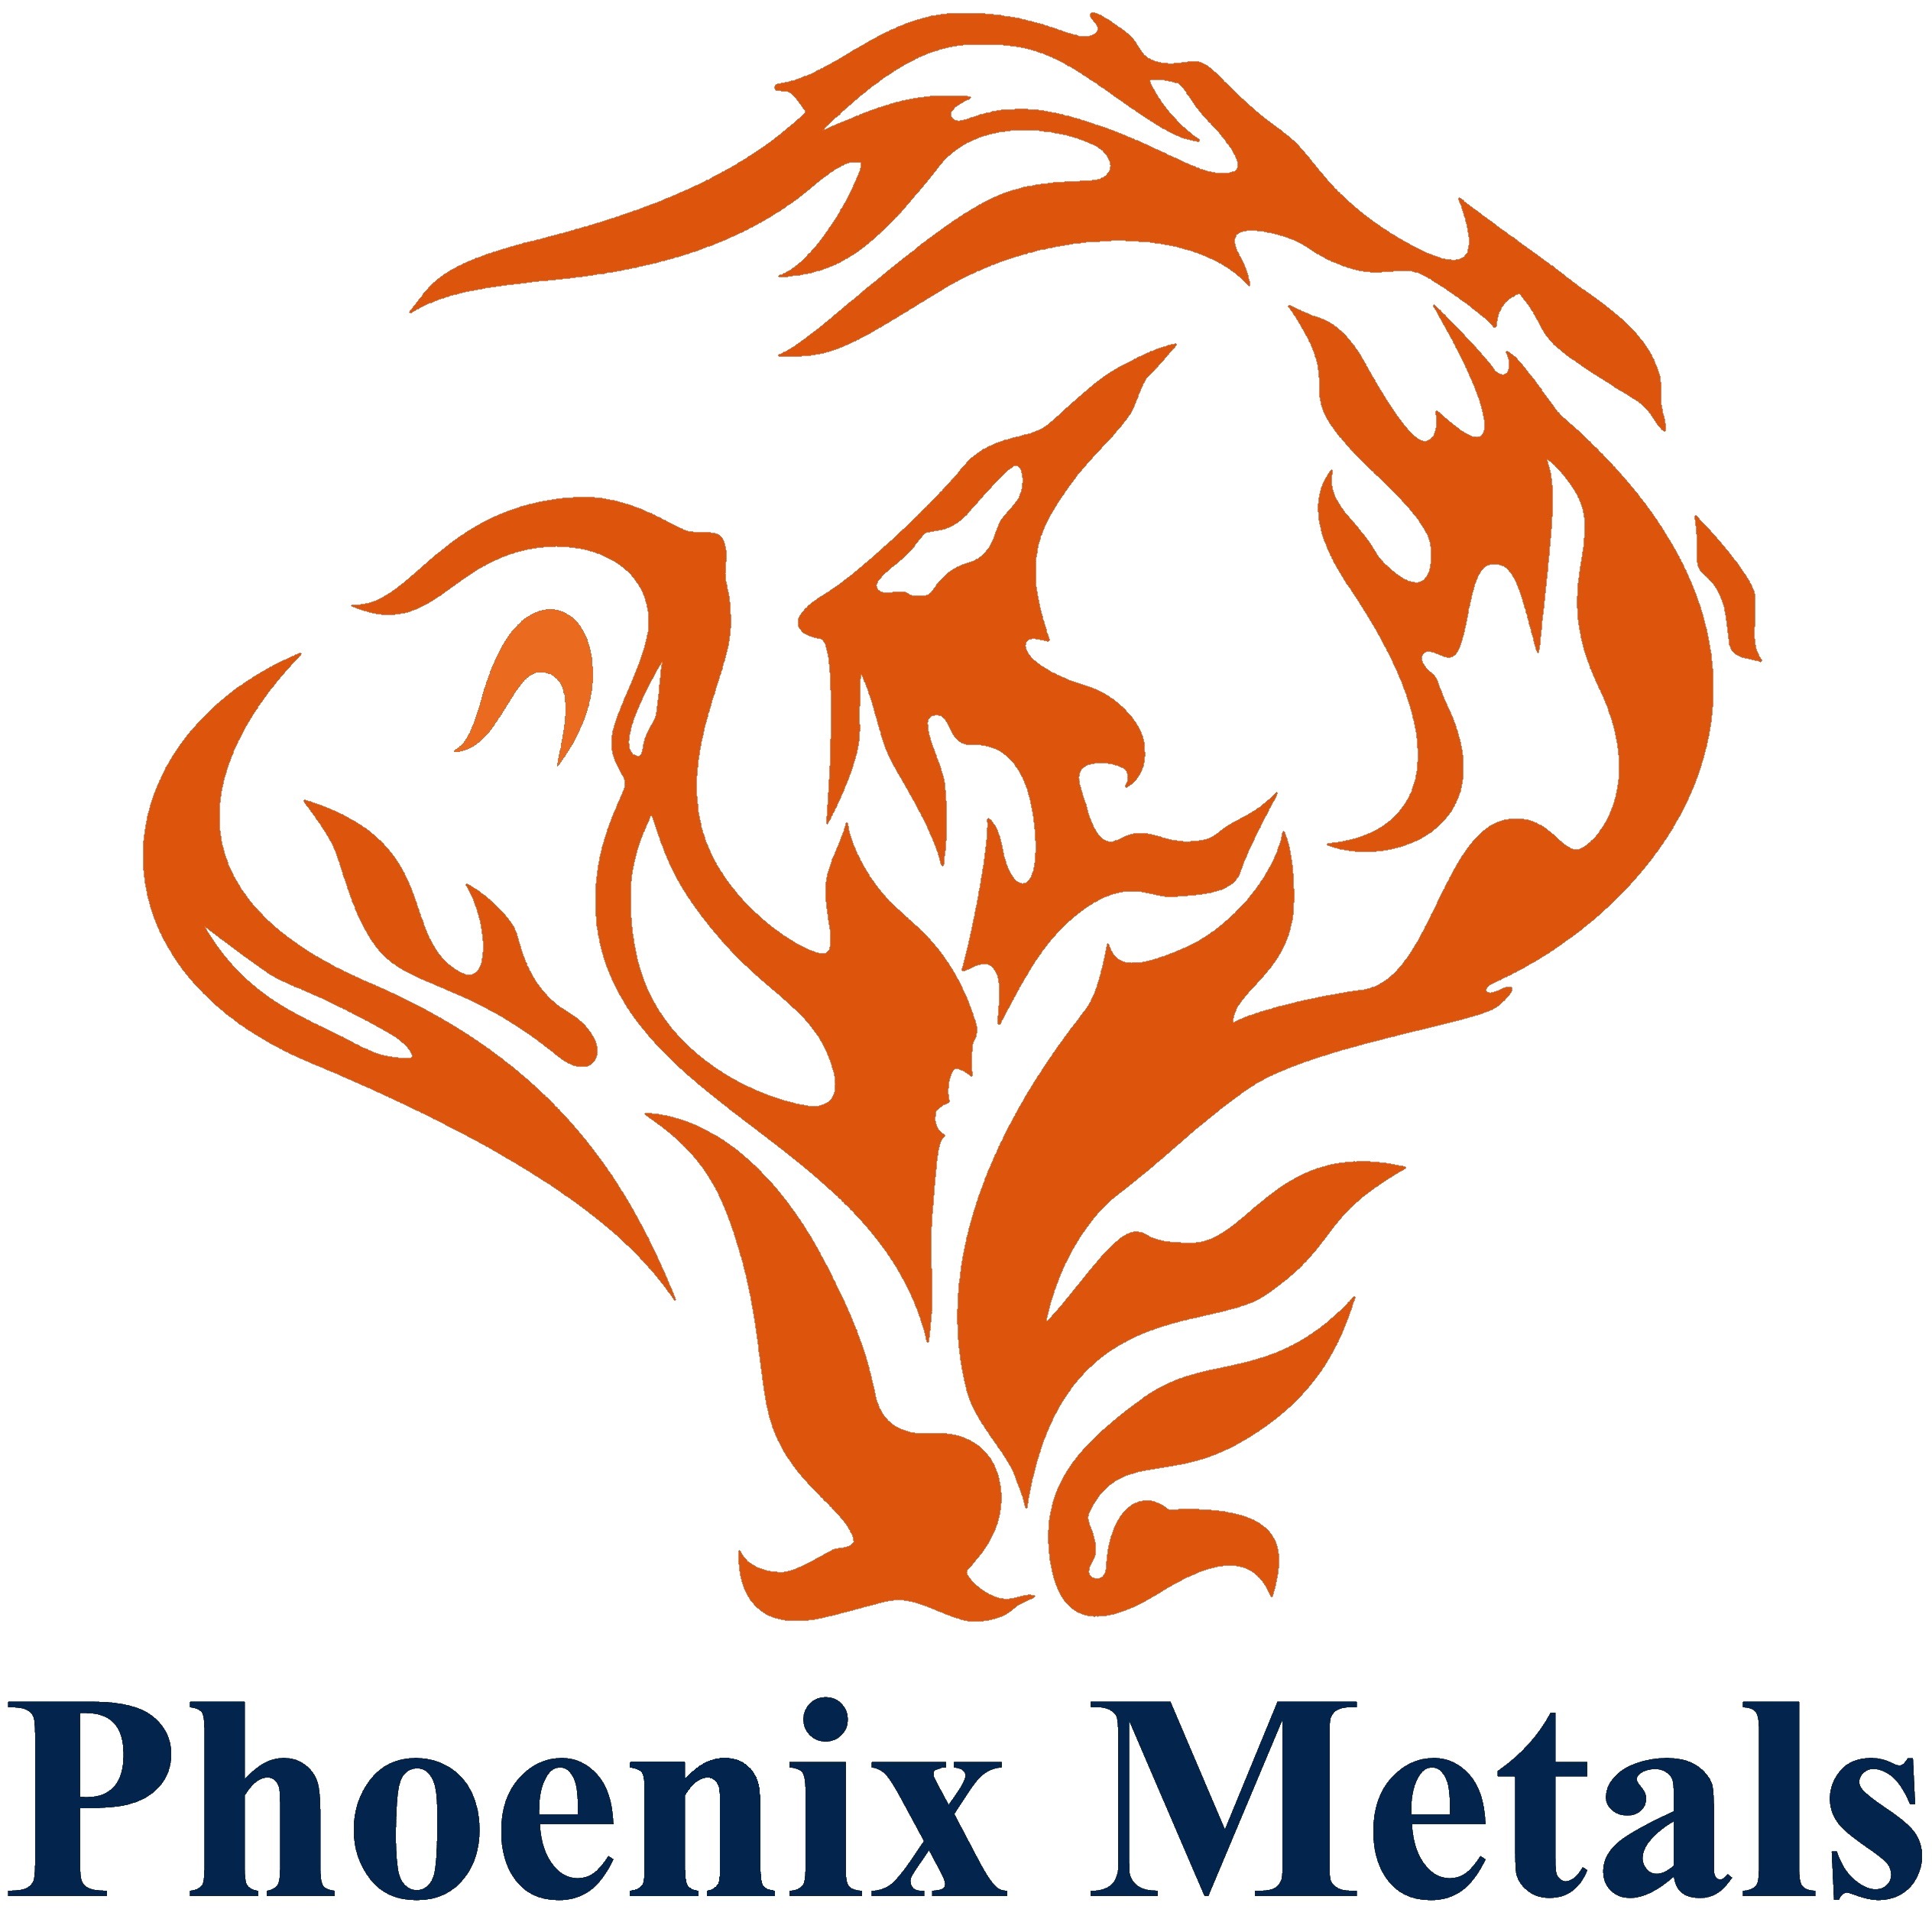 Phoenix Metals Company